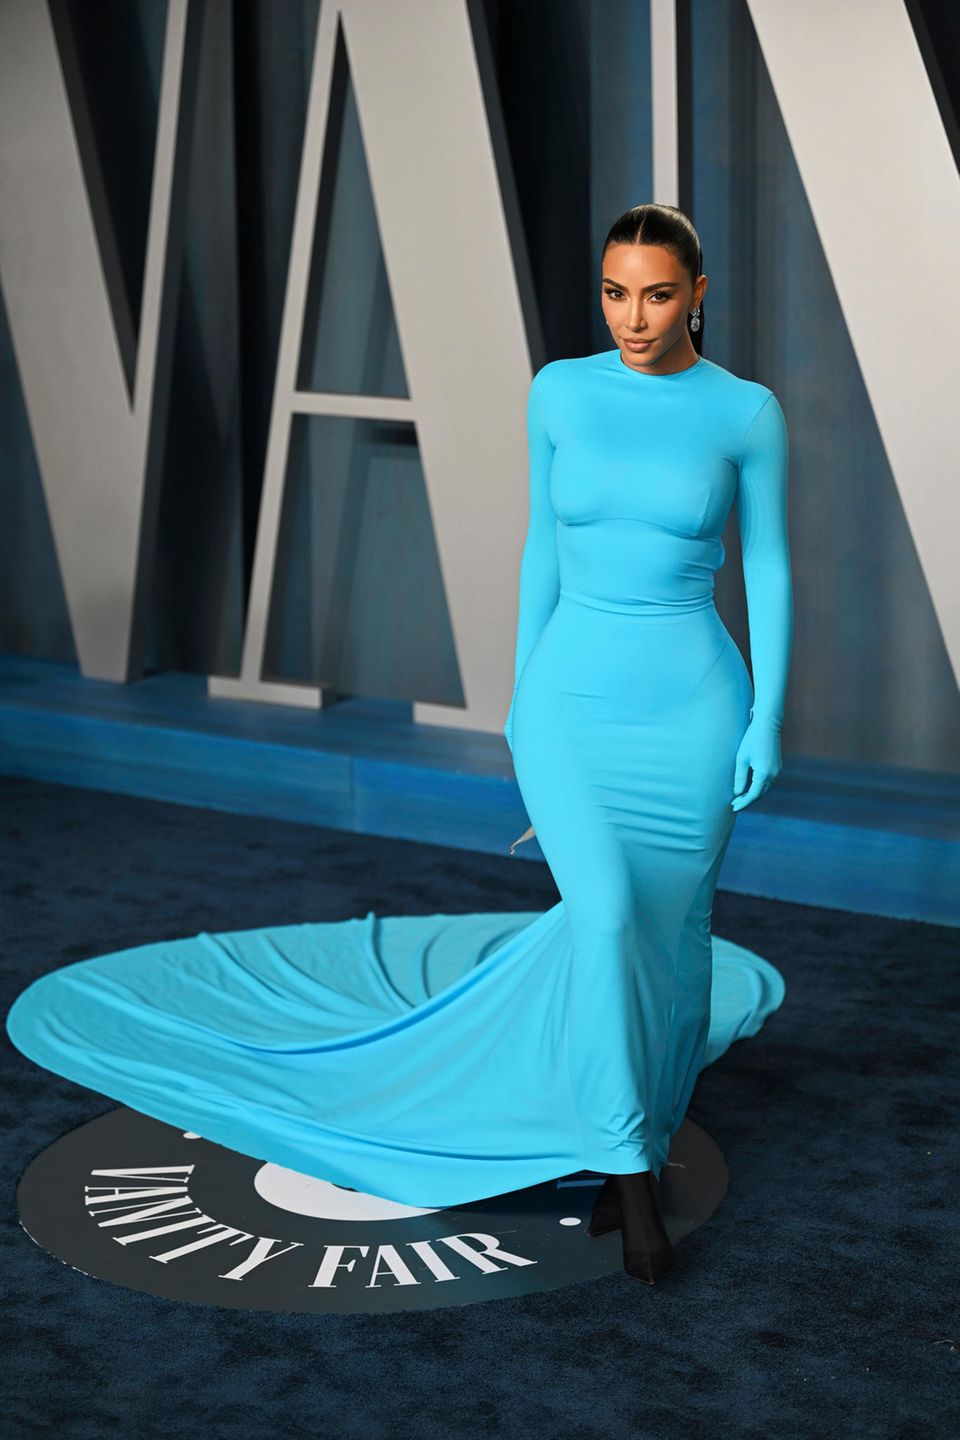 Keine Geringere als Kim Kardashian trägt das Kleid in knalligem Blau zwar nicht zum gleichen Event, jedoch erst vor wenigen Monaten auf der Oscar-Aftershow-Party von Vanity Fair. Die Bilder gingen um die Welt und scheinen gleich doppelt inspiriert zu haben, mit ihrem extravaganten Look ist die Unternehmerin eben einfach ein echtes Fashion-Vorbild.